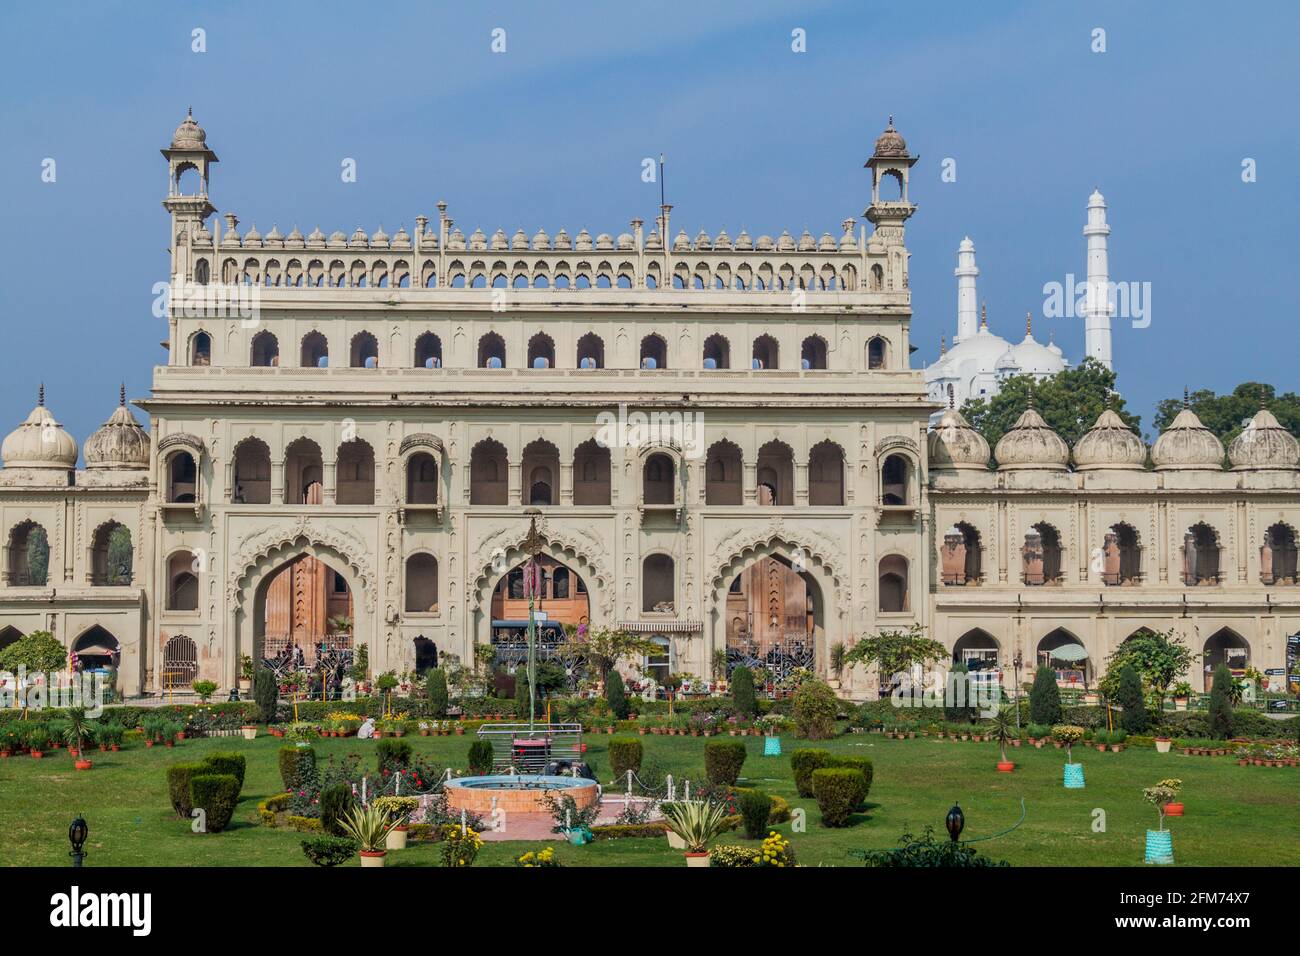 Eingangstor zu Bara Imambara in Lucknow, Bundesstaat Uttar Pradesh, Indien. Teele Wali Moschee im Hintergrund. Stockfoto